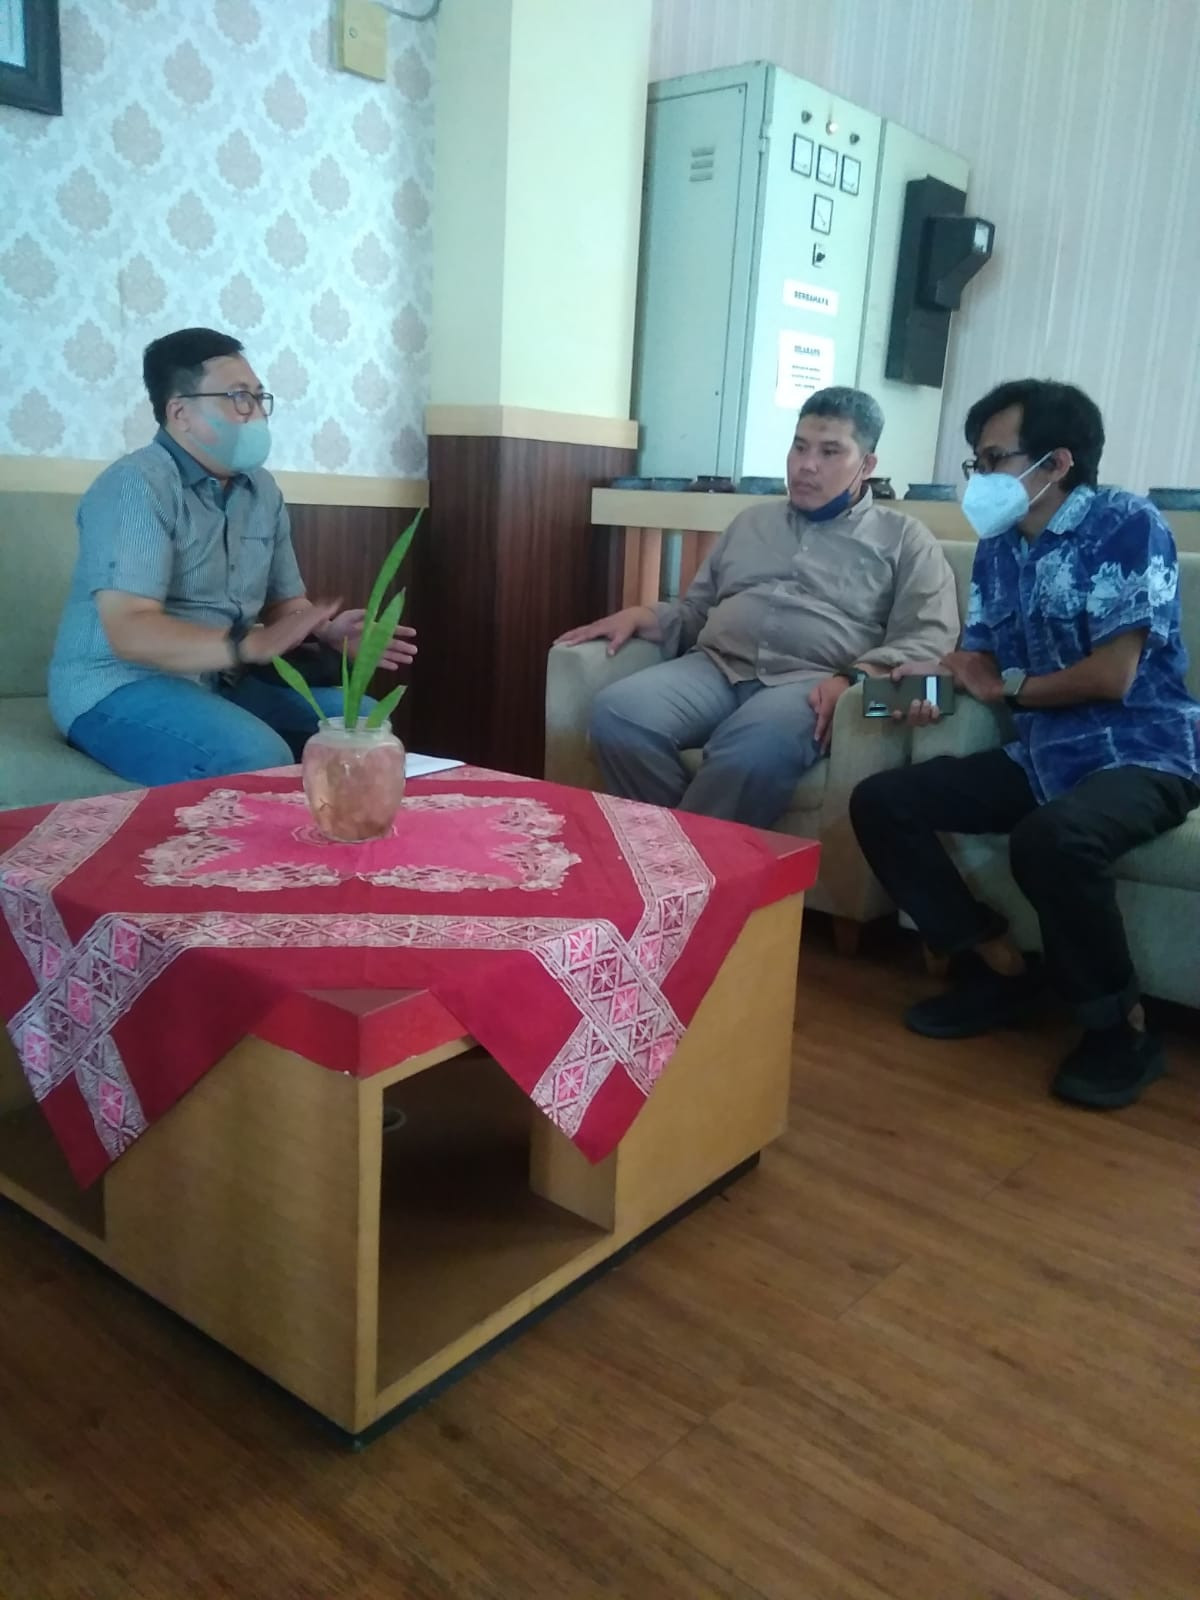 Ketua RDK Kelurahan Prawirodirjan memberikan Surat Permohonan Pendampingan Rumah Data Kelurahan Prawirodirjan ke PSKK UGM